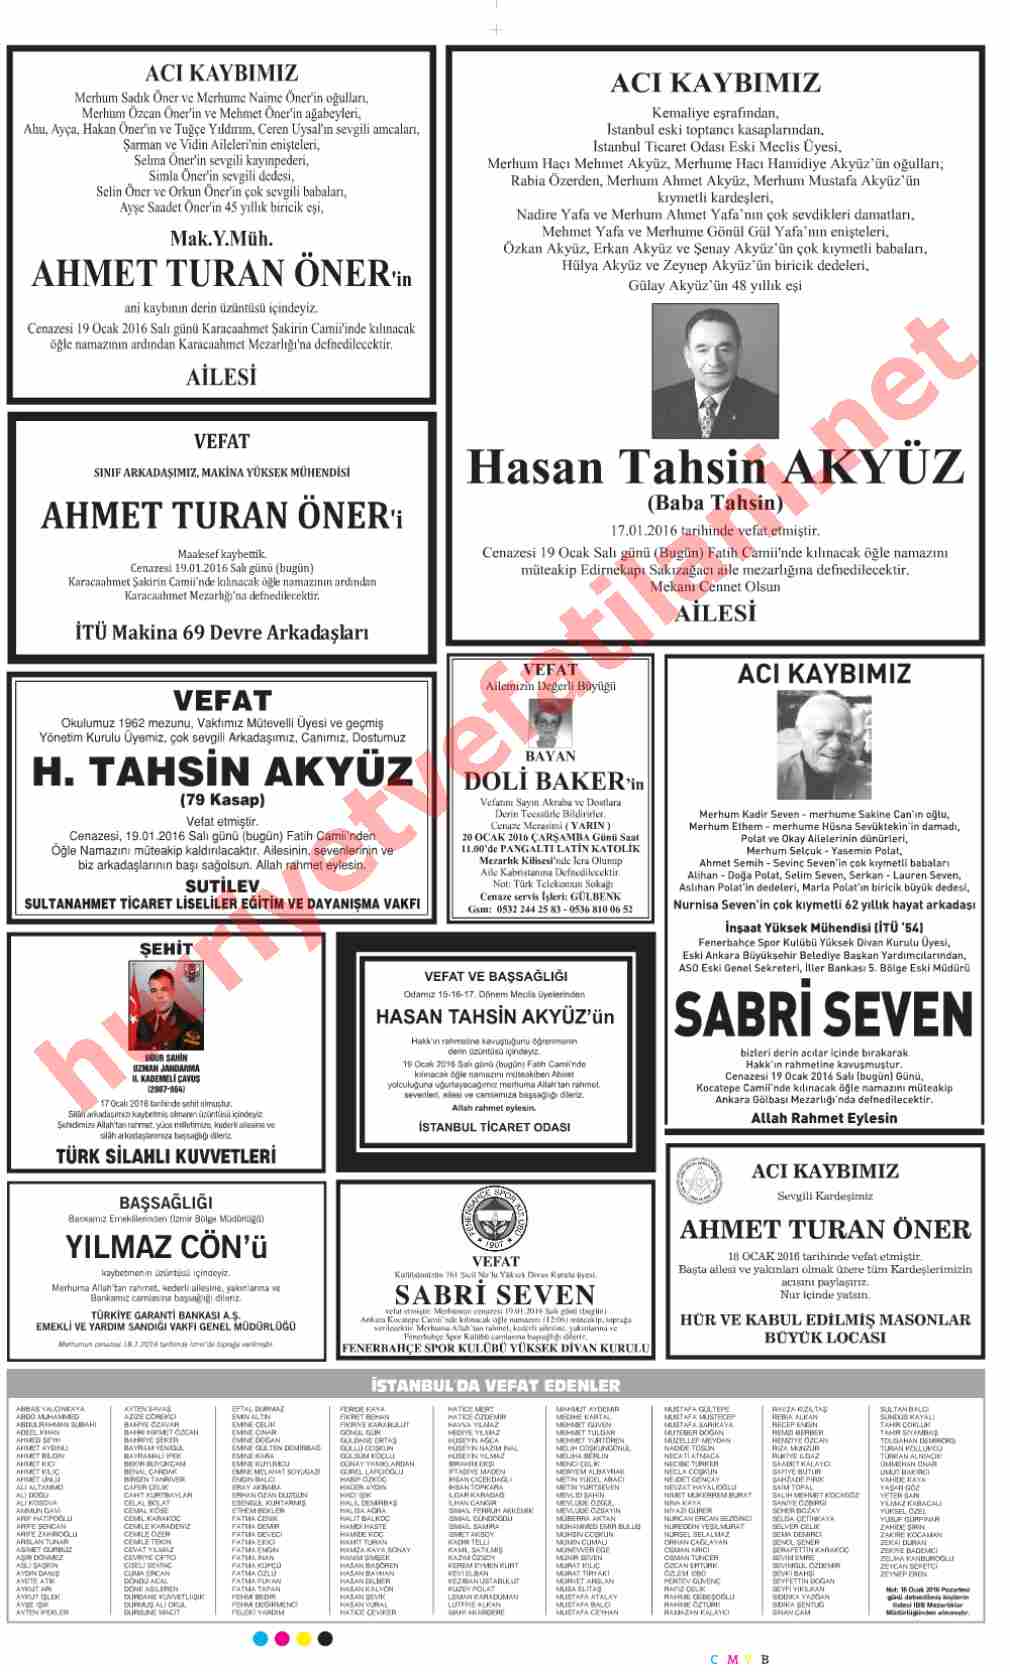 19 Ocak 2016 Hürriyet Gazetesinde Yayınlanmış Vefat İlanları Sayfası